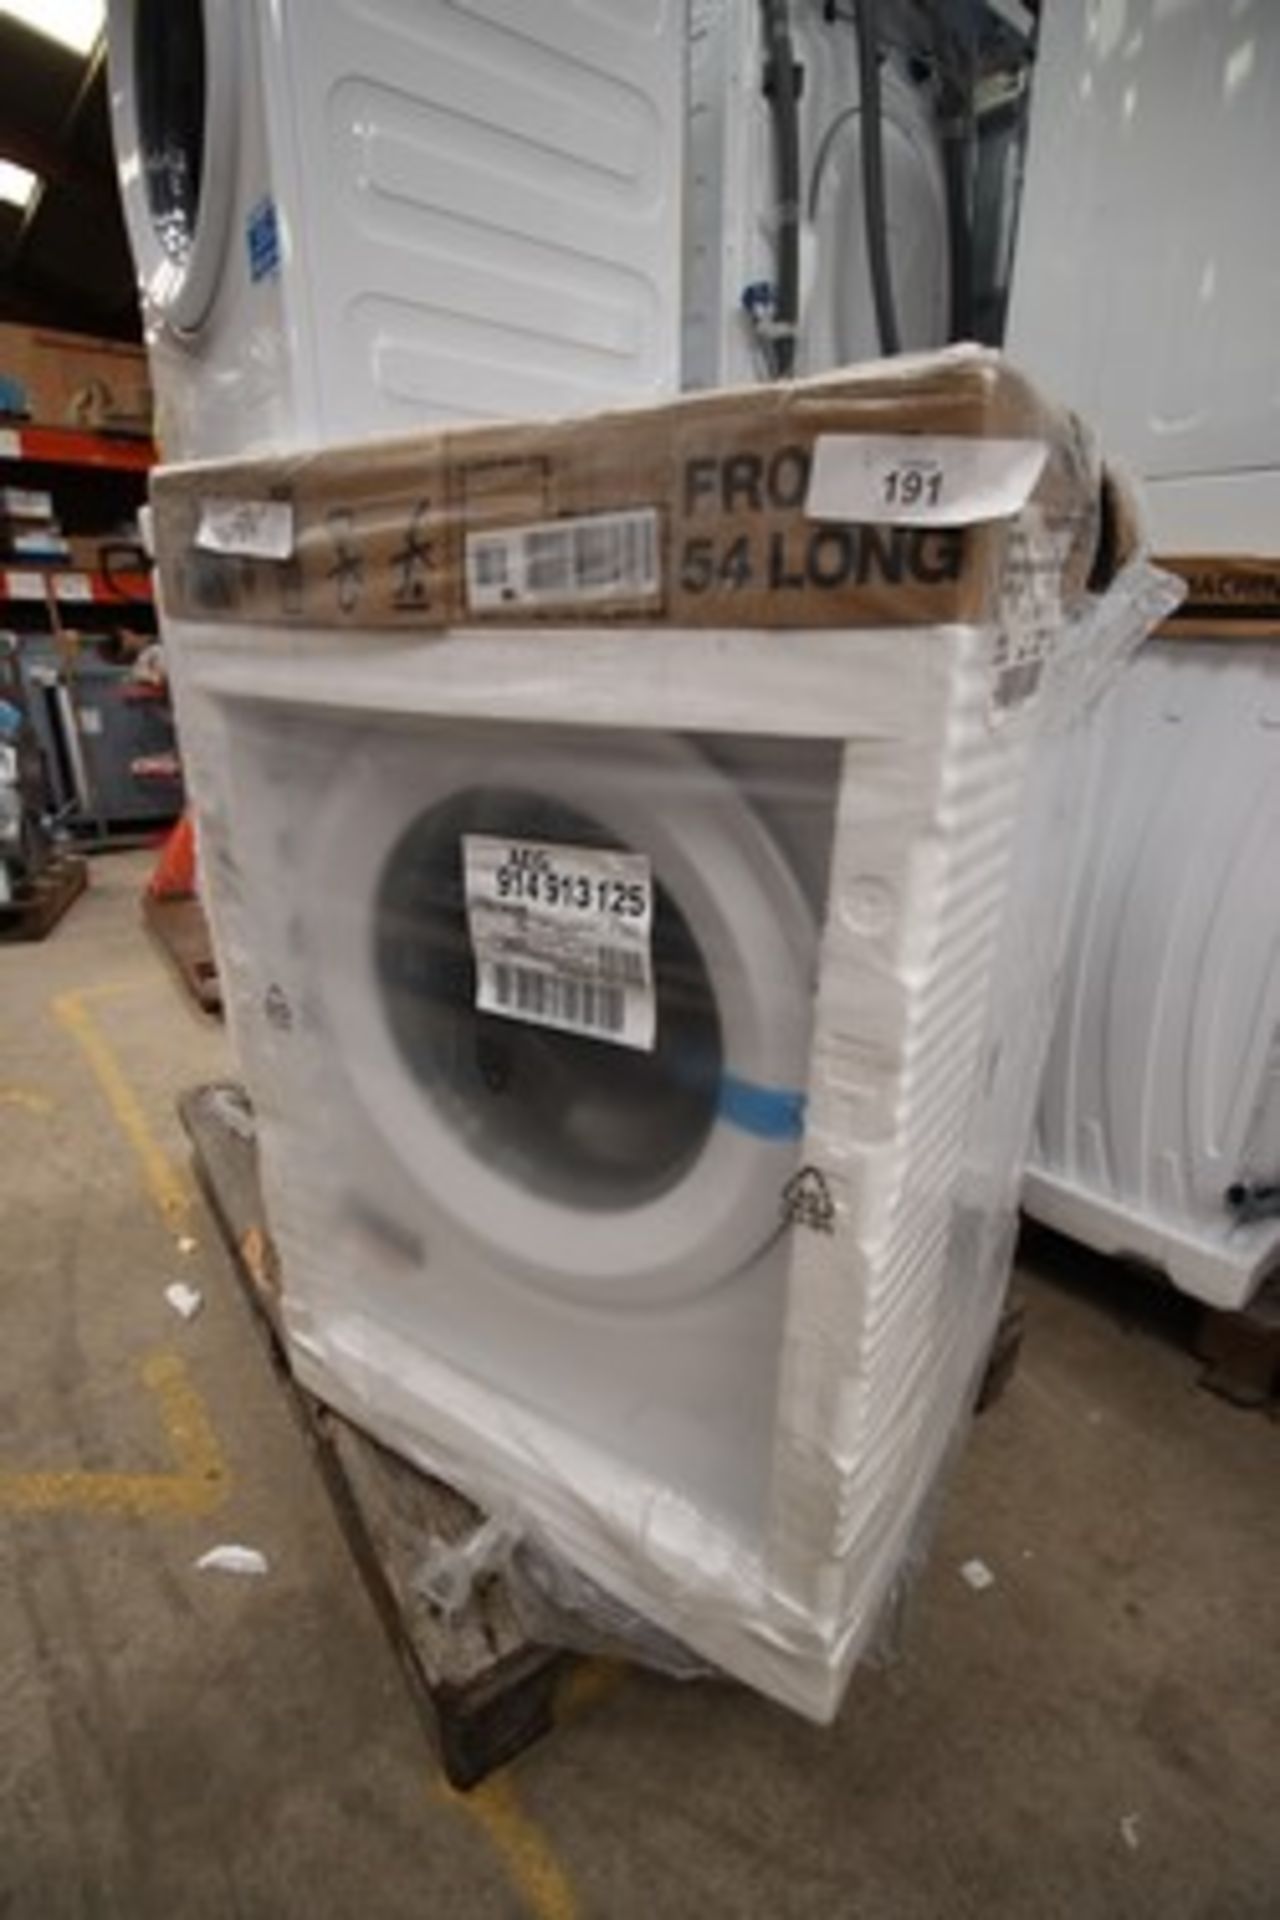 1 x AEG 8kg washing machine, Model 914913125 - New in pack (eBay 9)